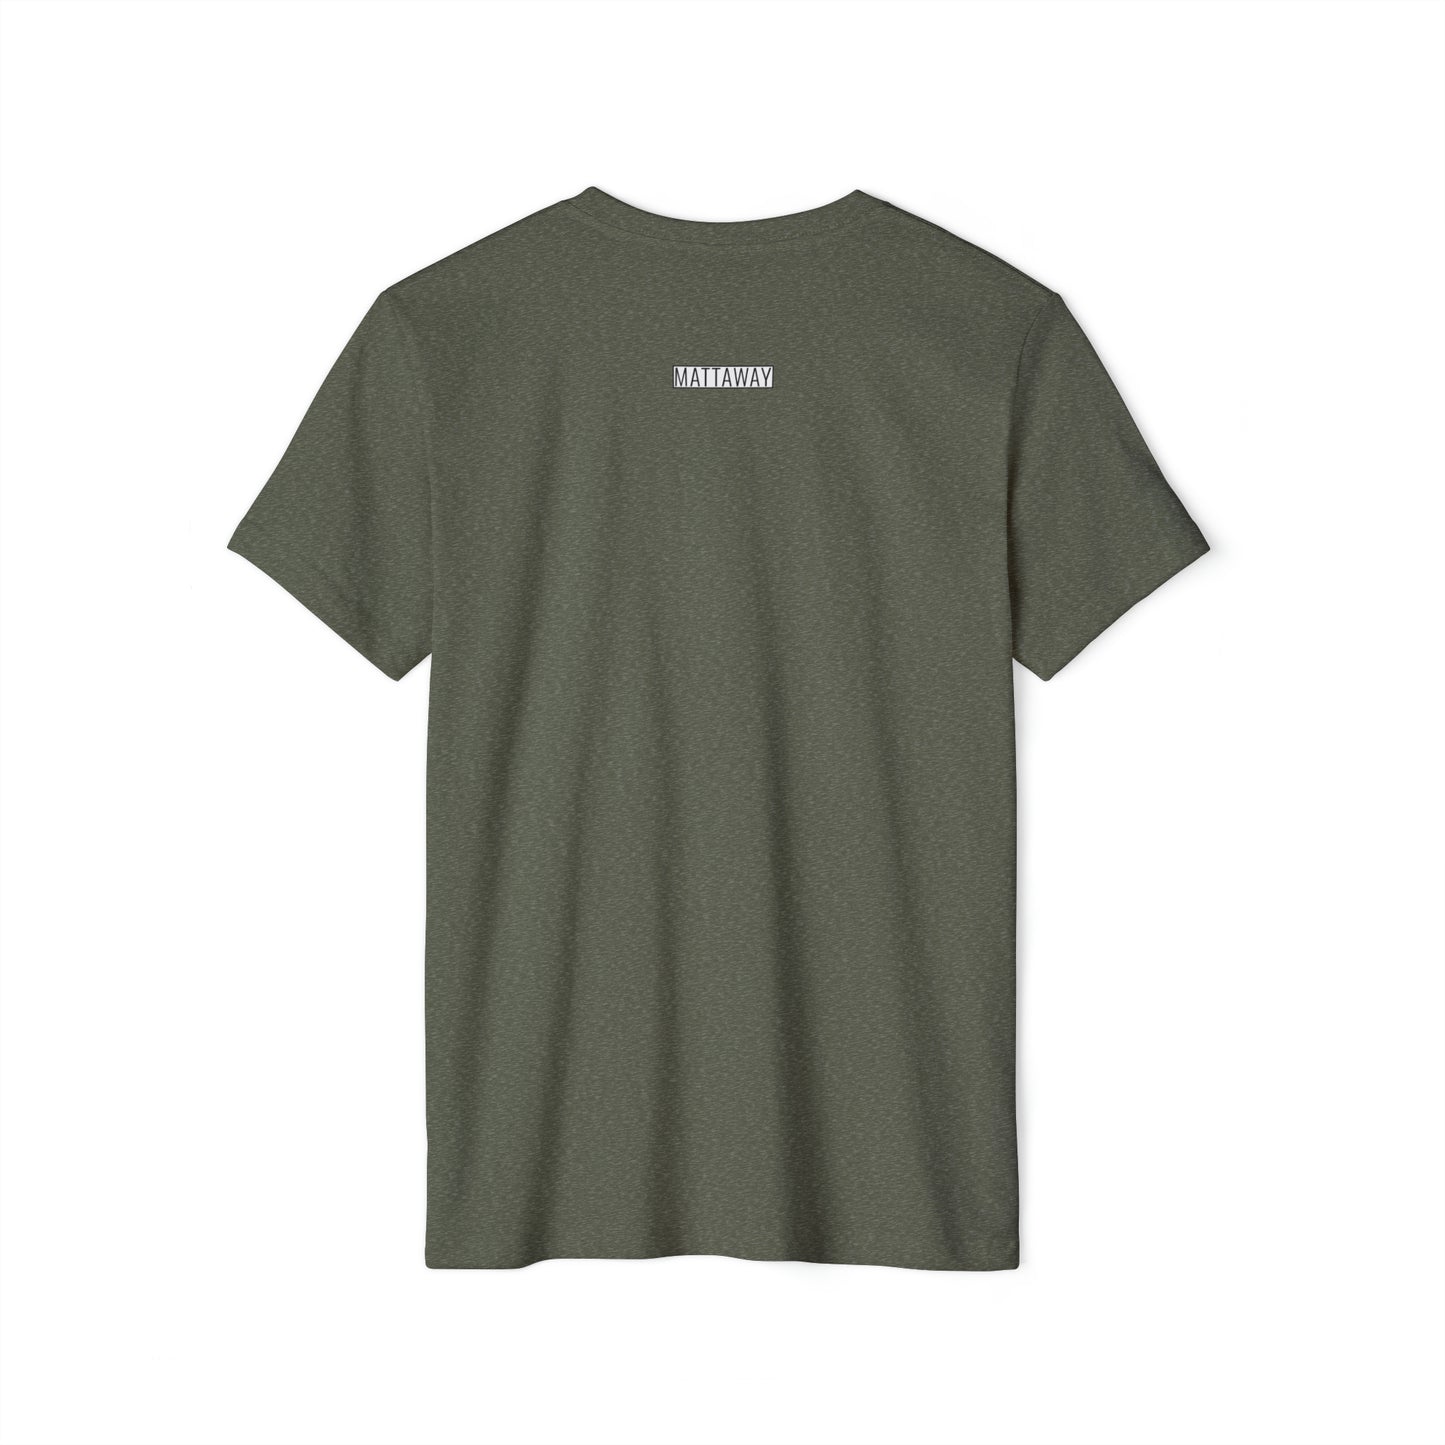 MINIMAL SHAPE 106 - Camiseta ecológica reciclada unisex